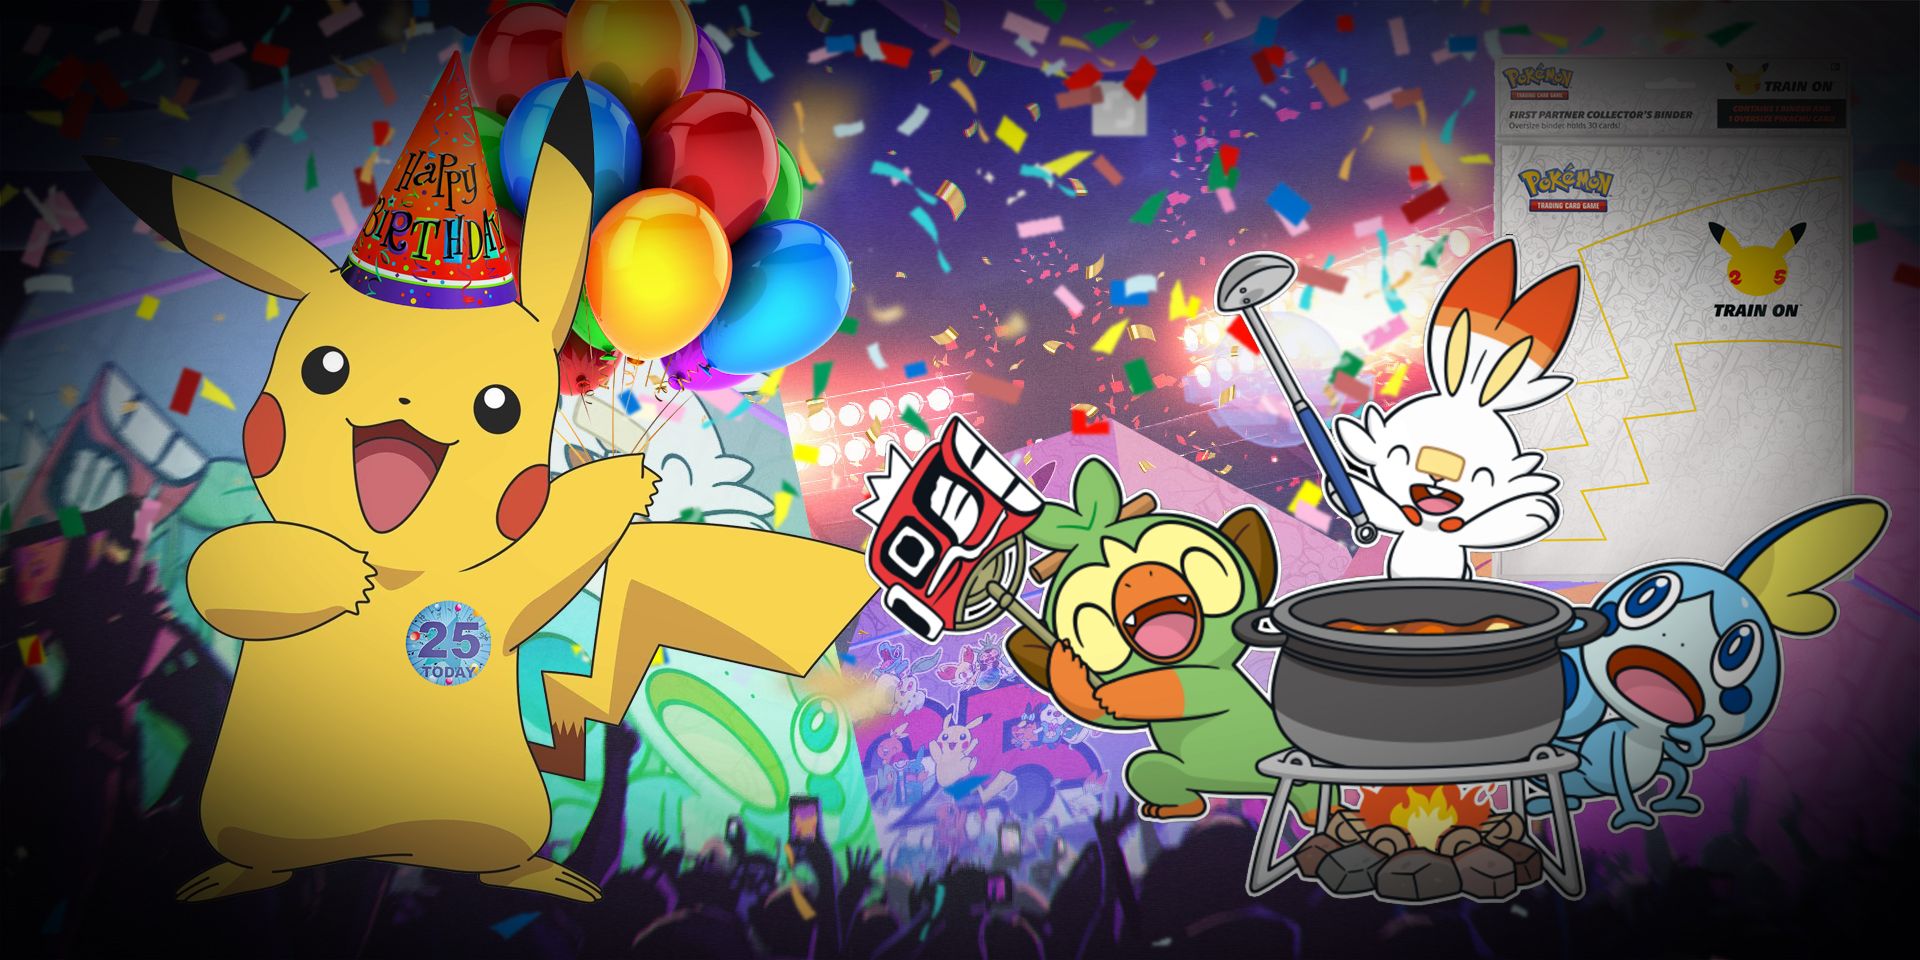 Celebrating Pokemon's 25th birthday